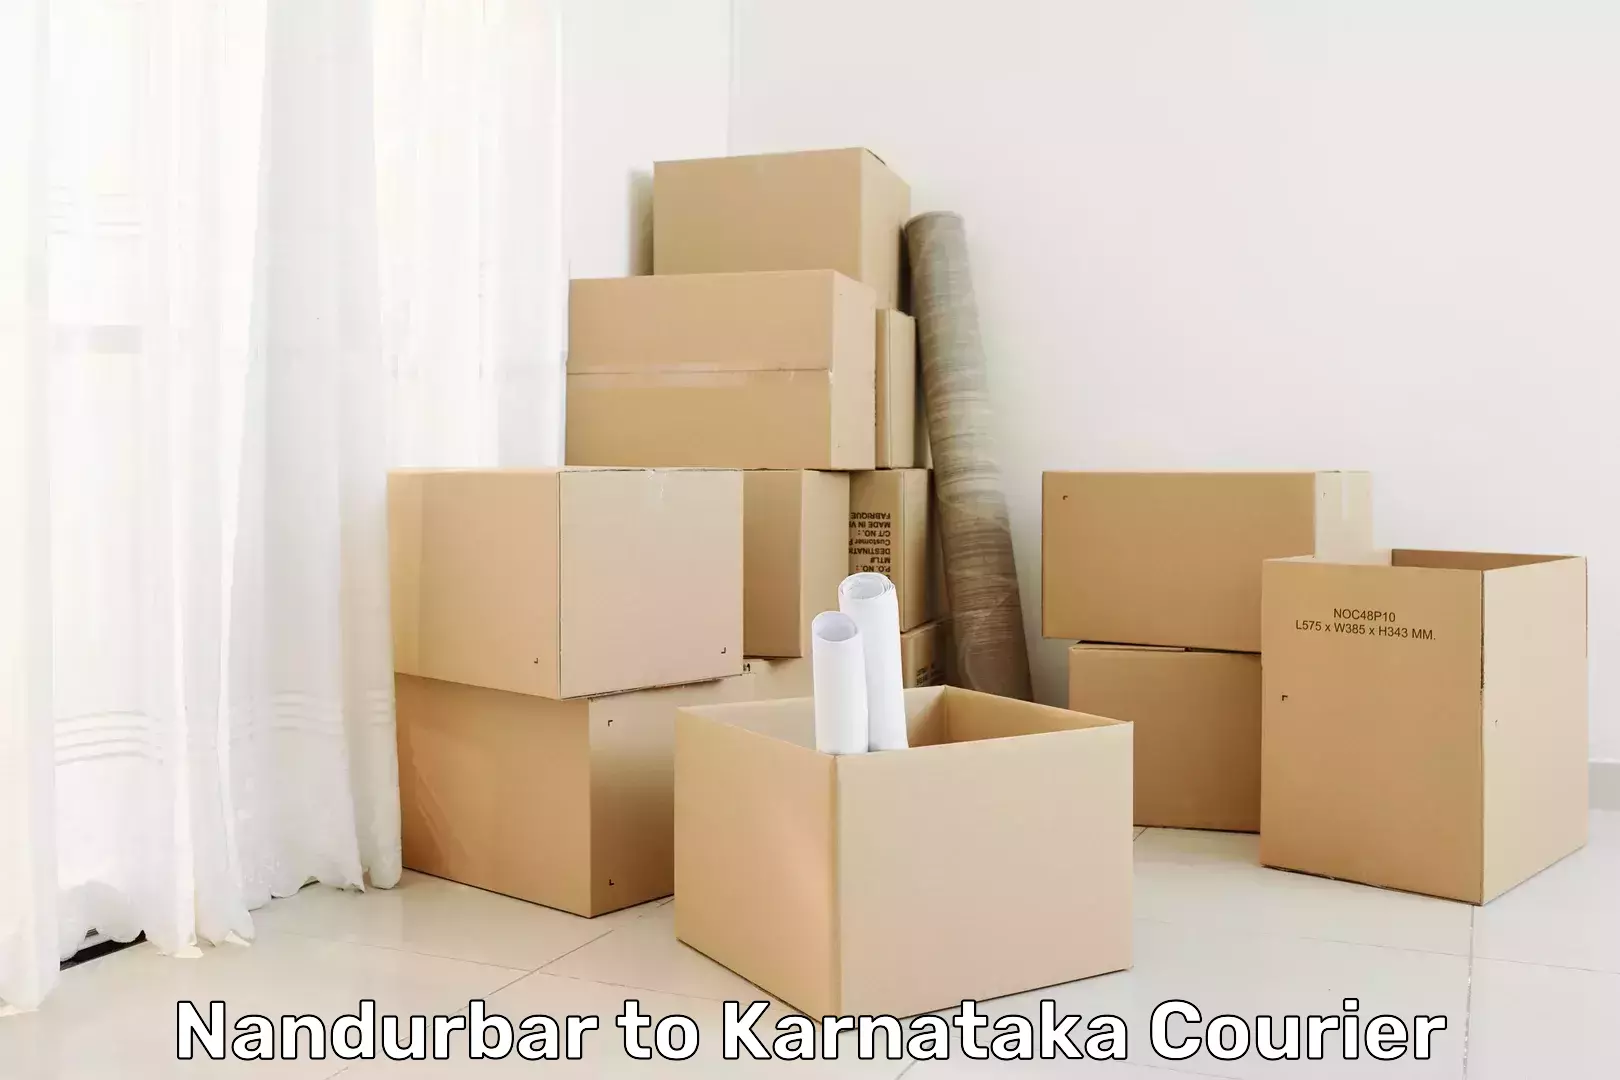 Express mail solutions Nandurbar to Karnataka